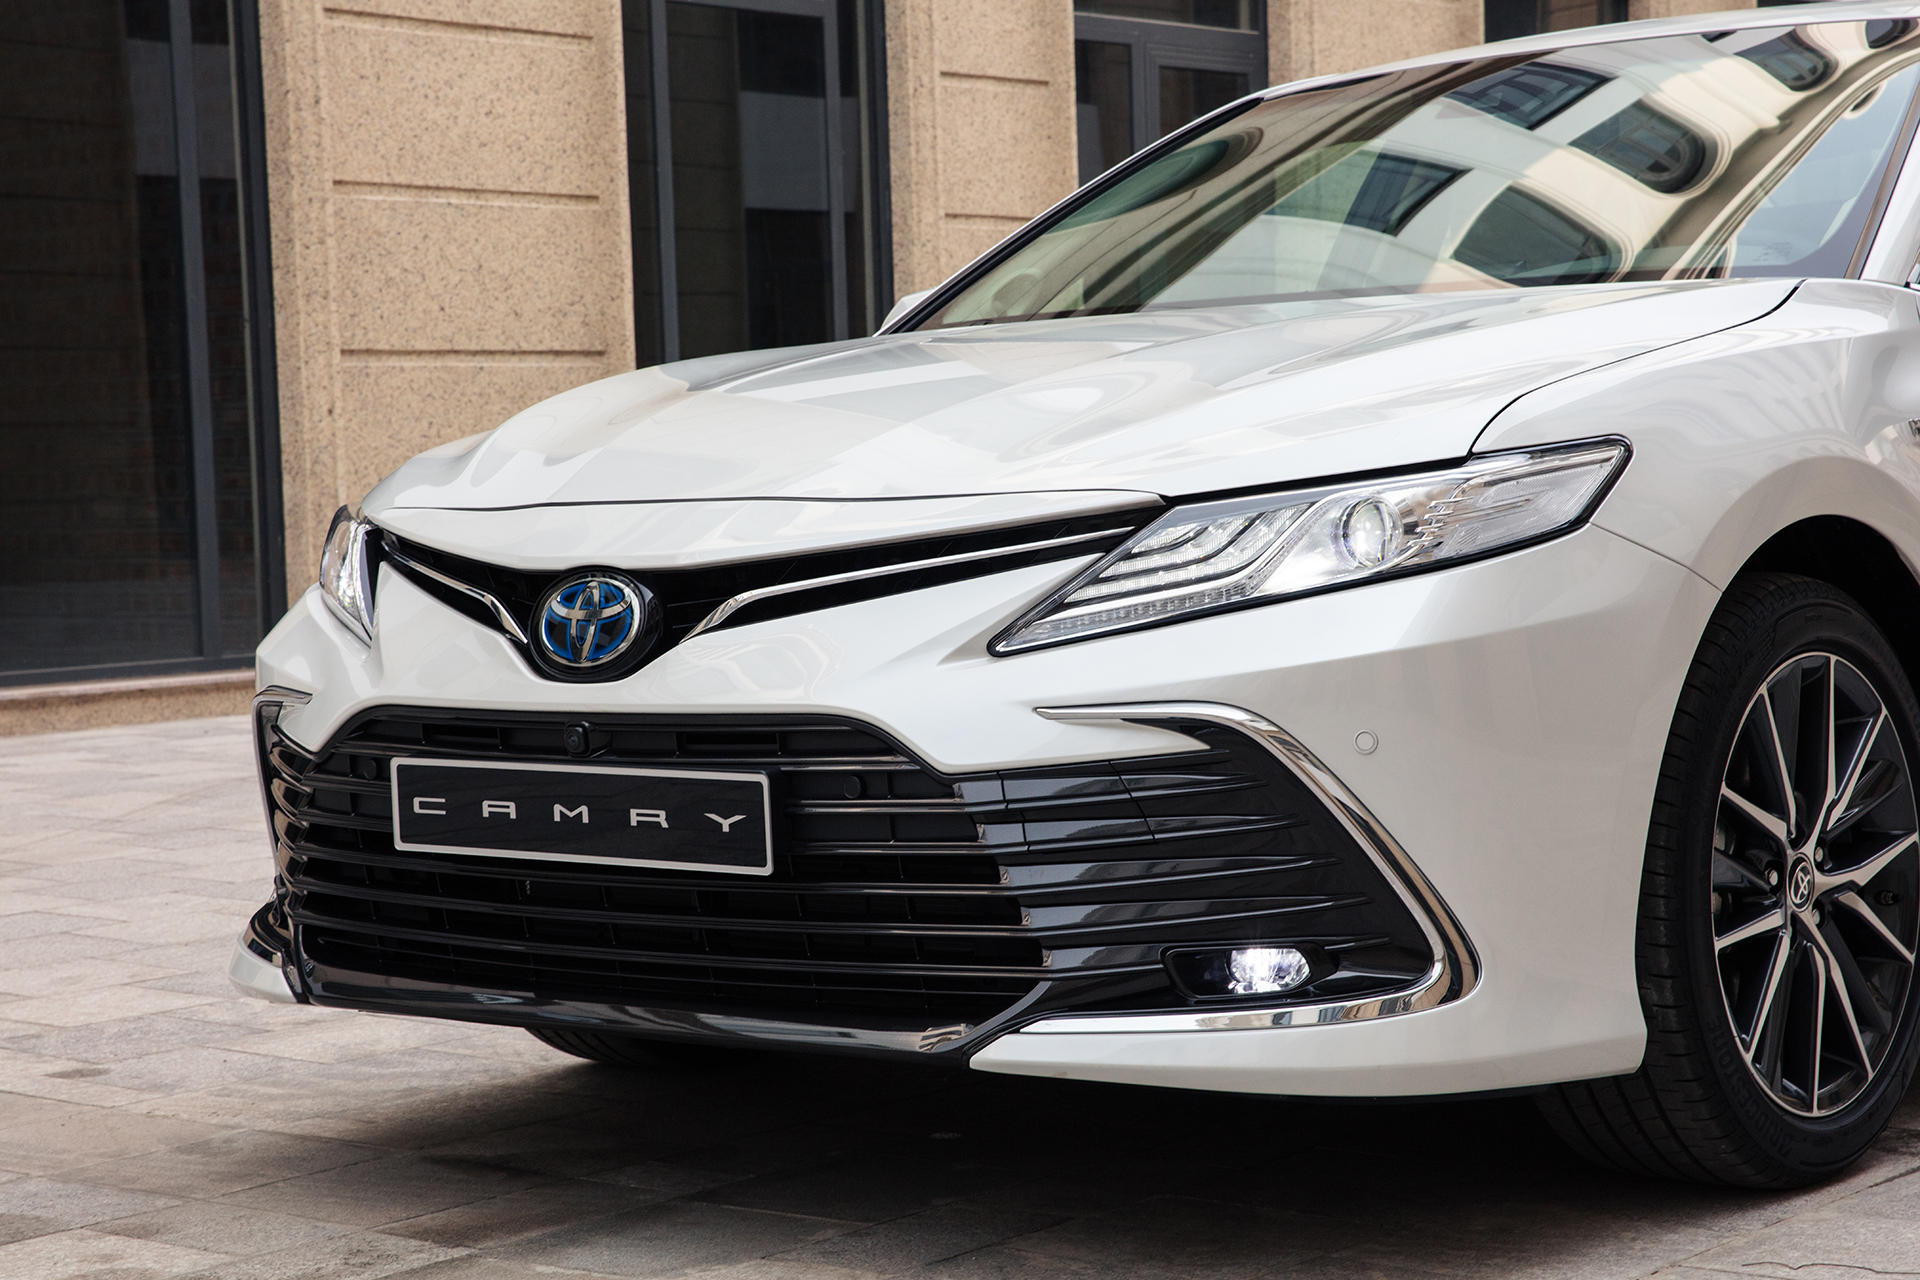 Chi tiết Toyota Camry 2022 phiên bản HV giá 1,441 tỷ đồng toyota-camry-6.jpg